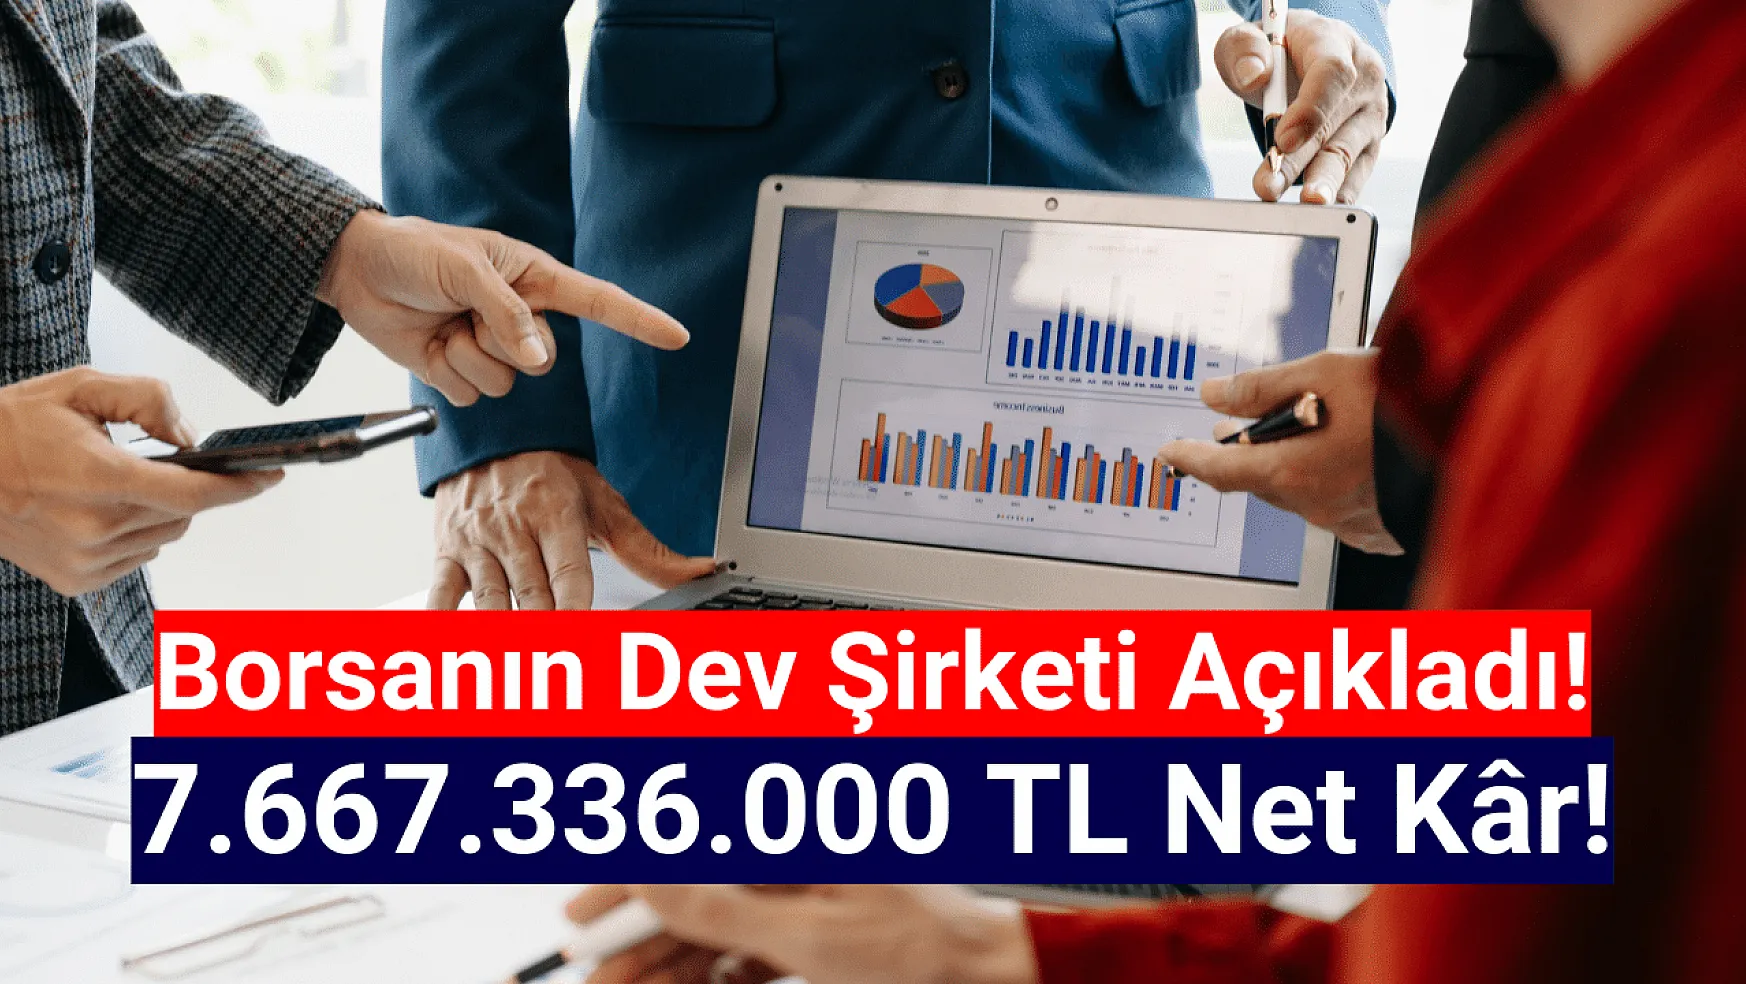 Borsanın dev şirketi 7.667.336.000 TL net kâr açıkladı!